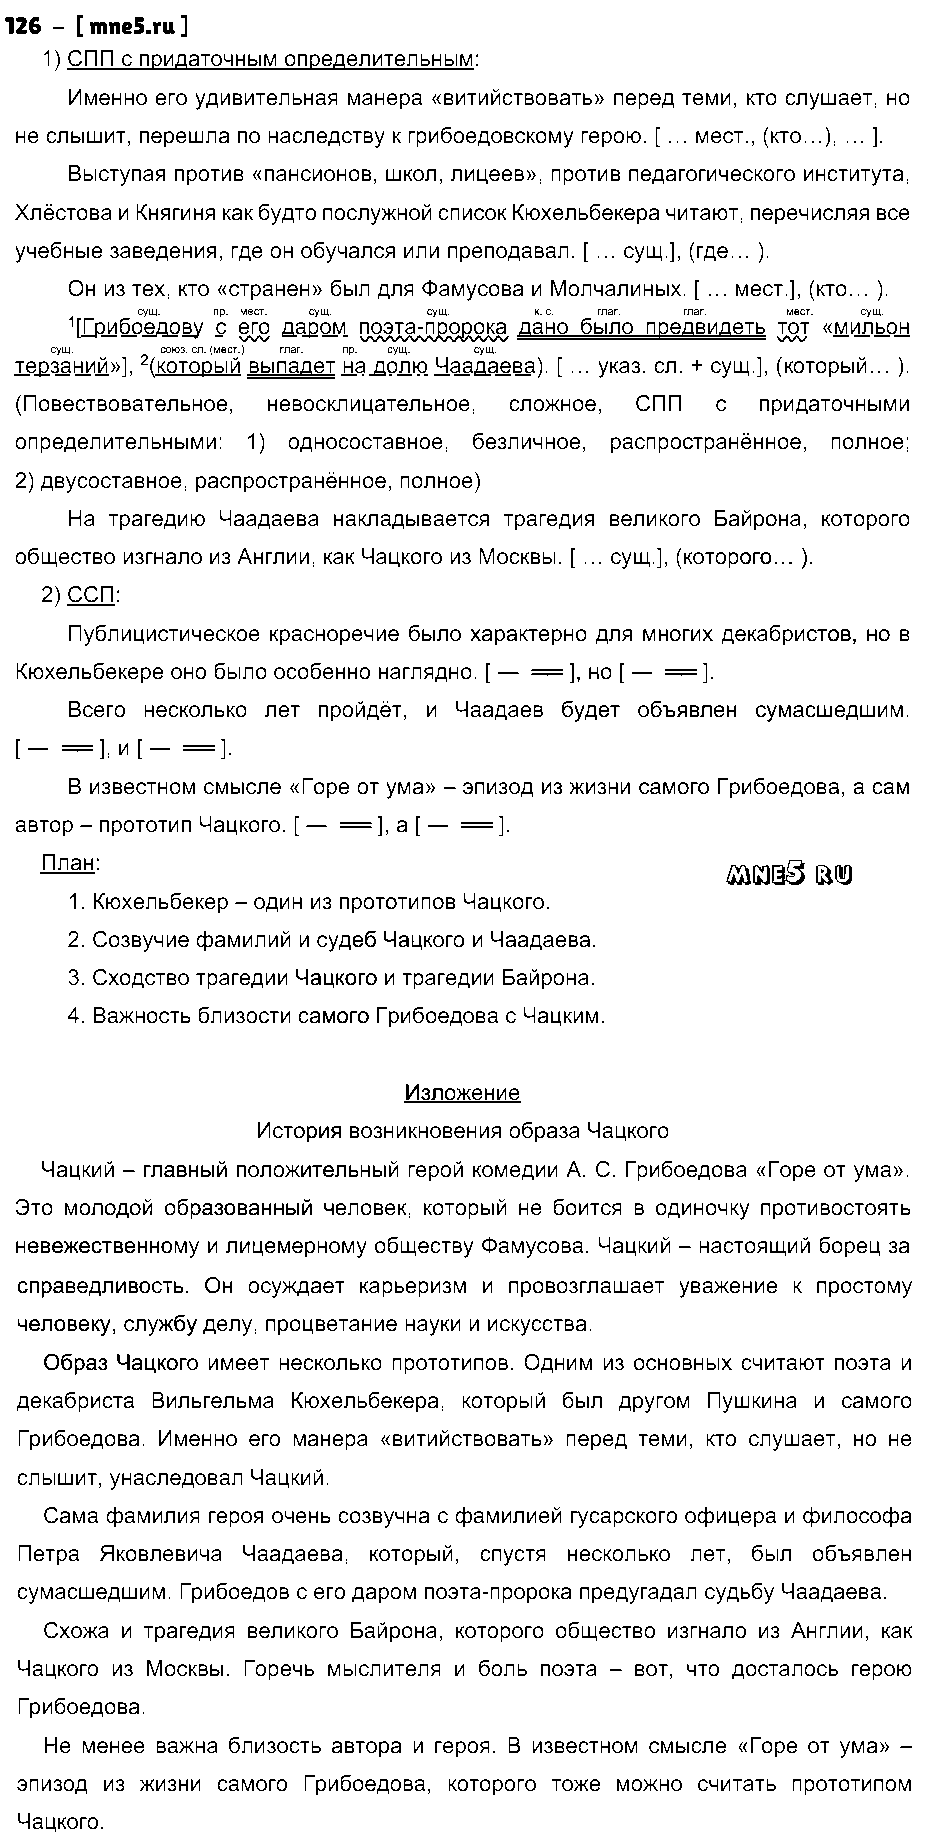 ГДЗ Русский язык 9 класс - 126